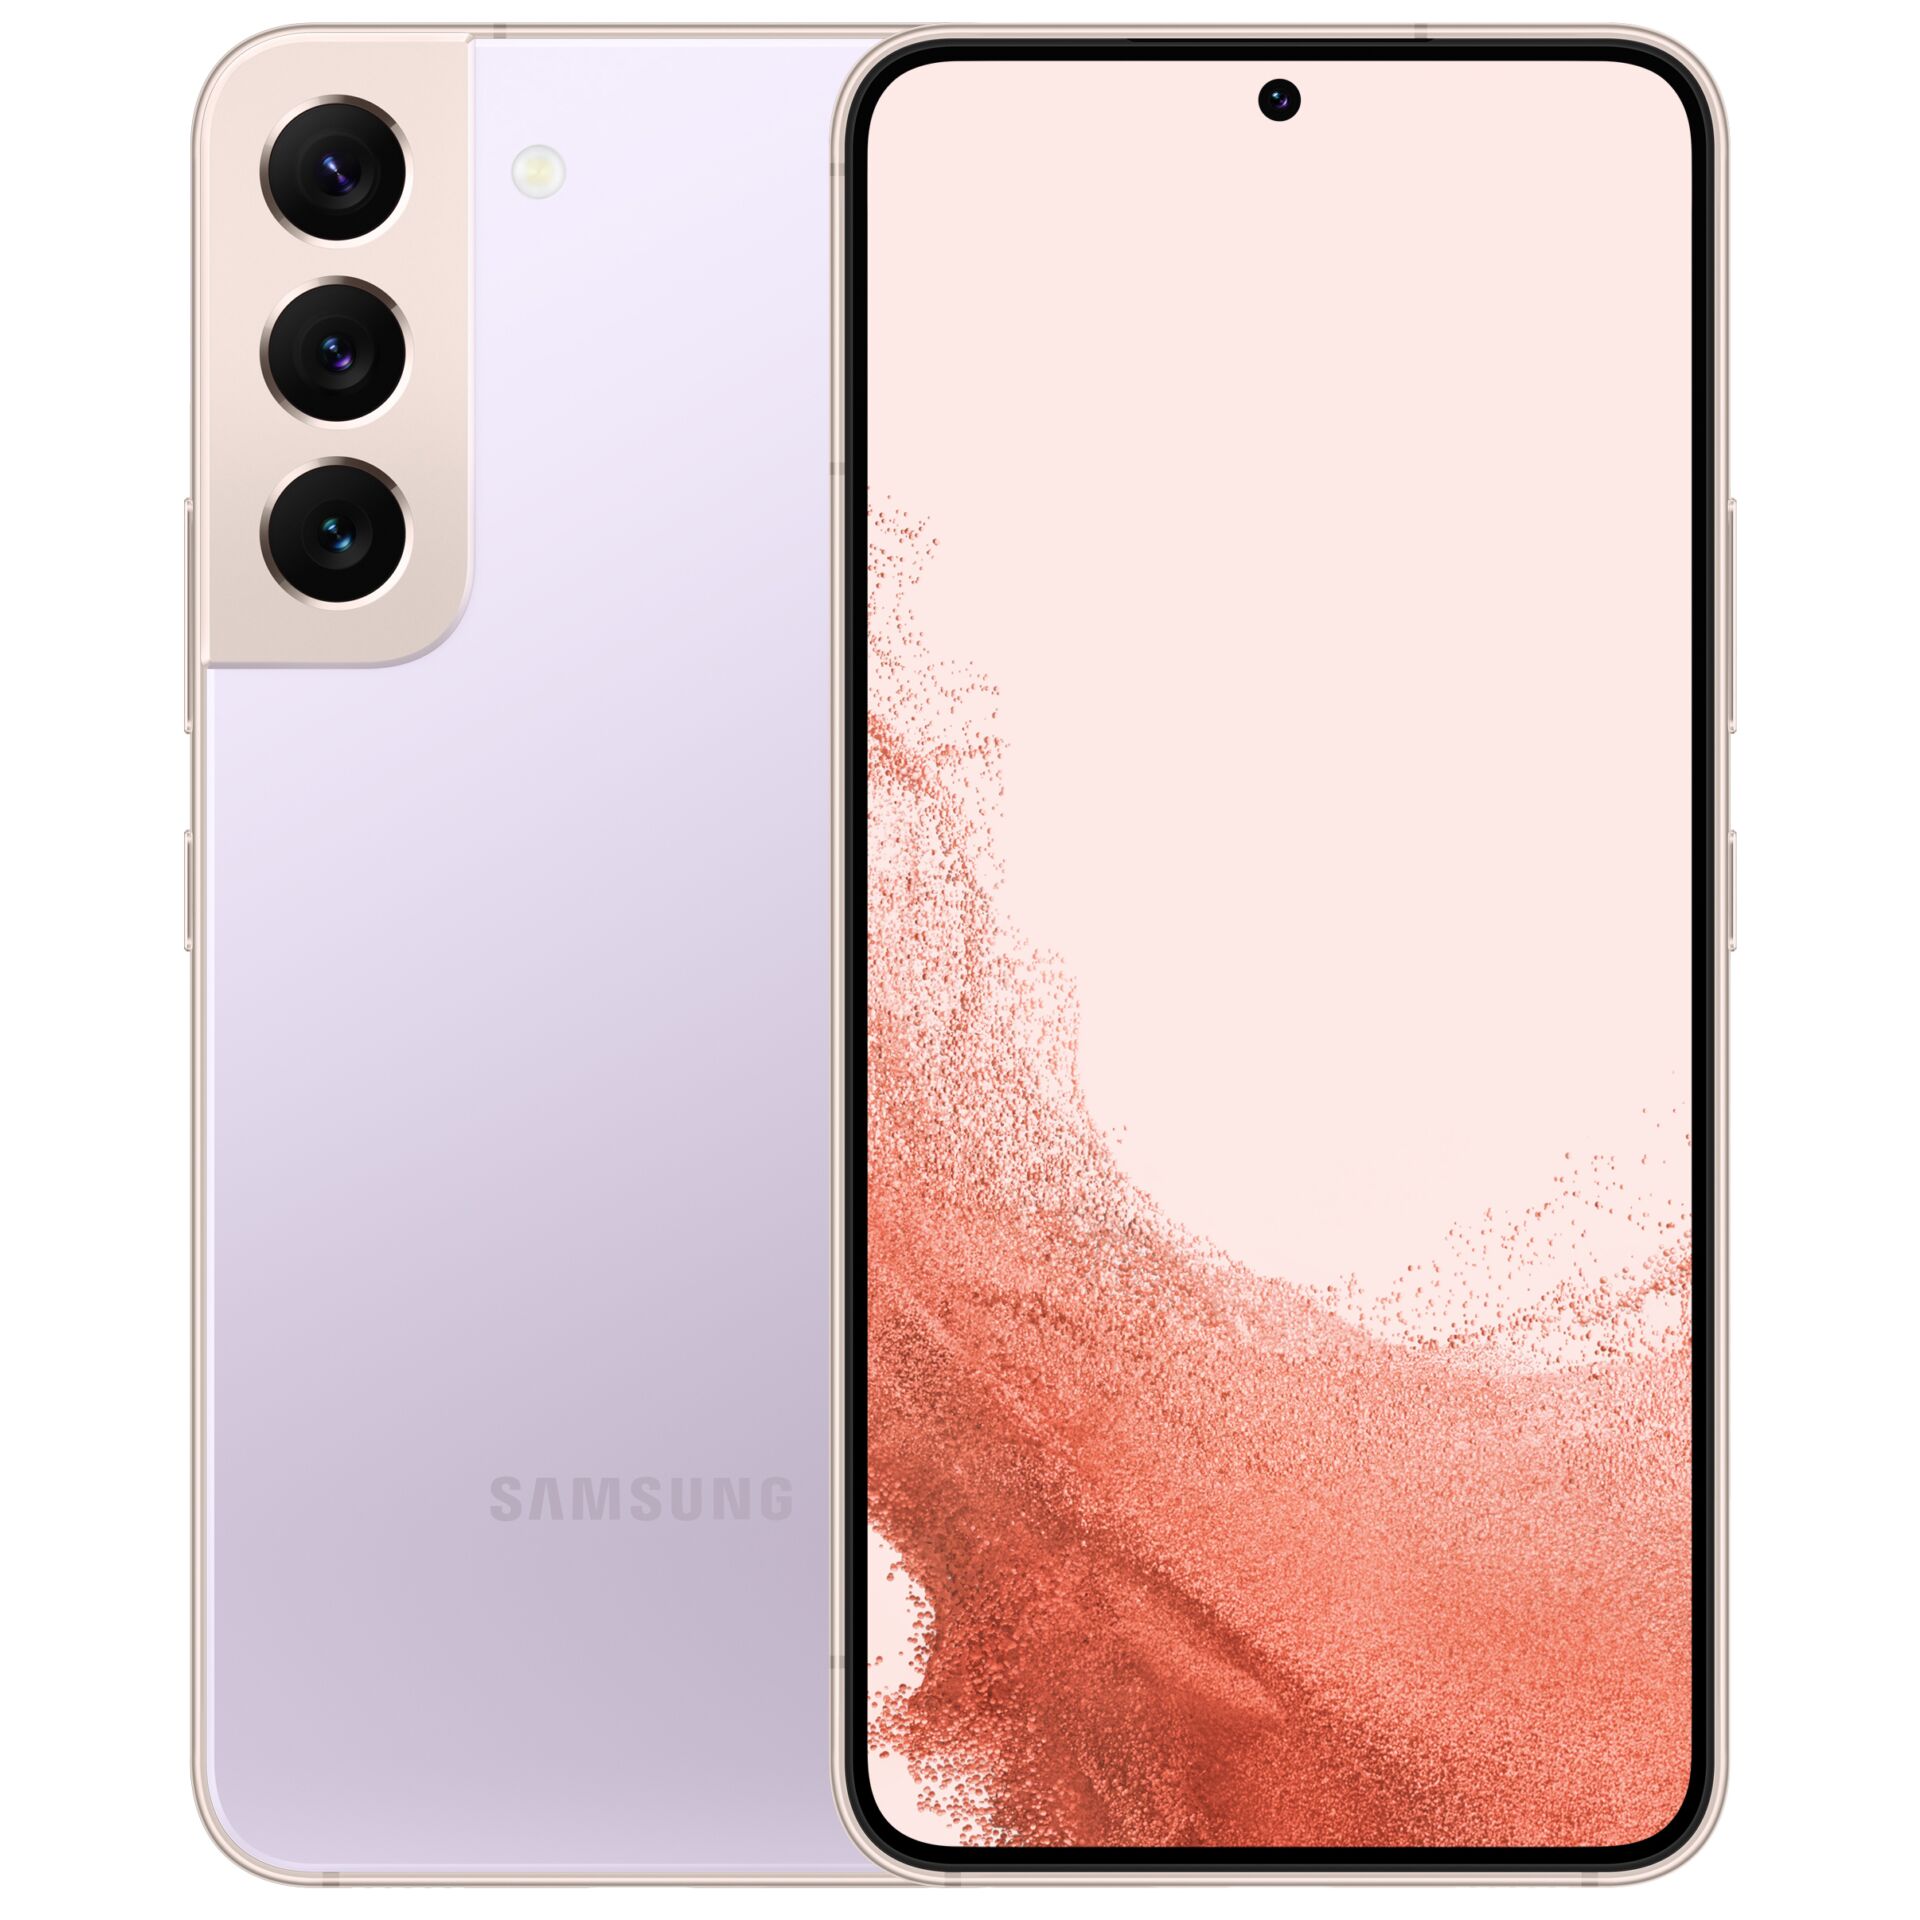 Samsung Galaxy S22 5G 128GB bora purple